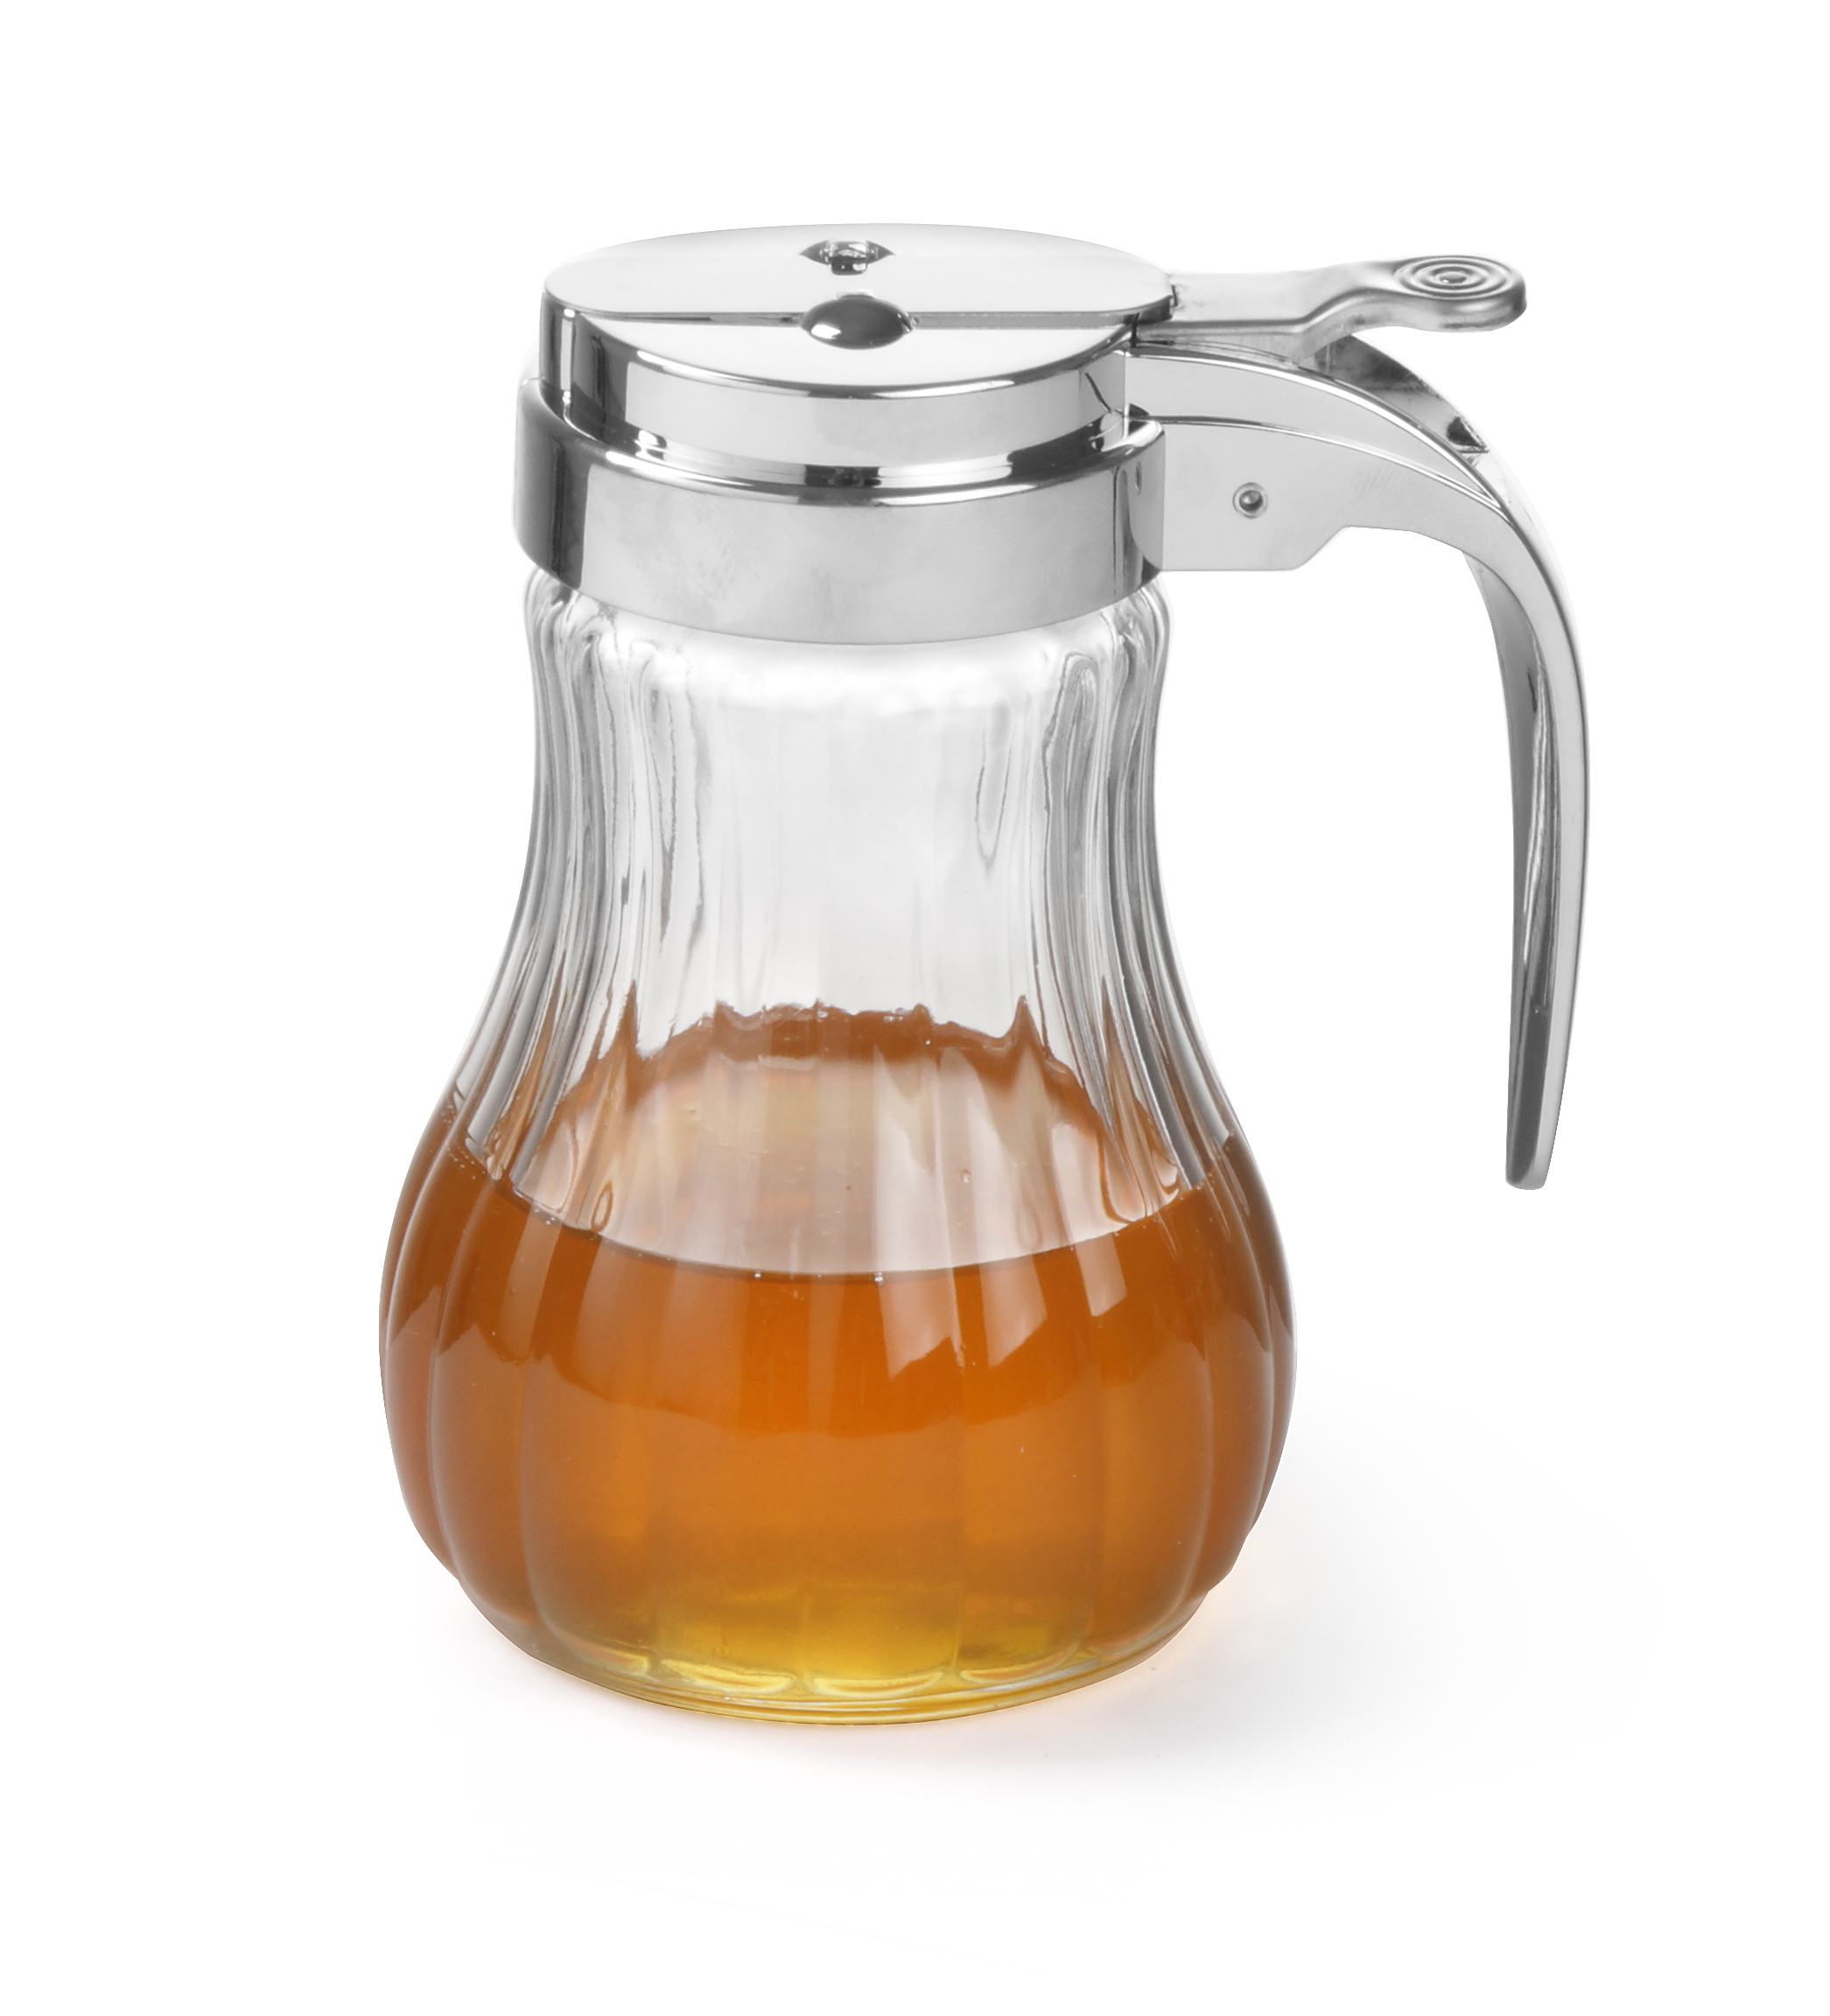 con supporto Honey dispenser  trigger Release in vetro 226,8 gram   KICW0070 8oz  Syrup Honey dispenser di cottura 